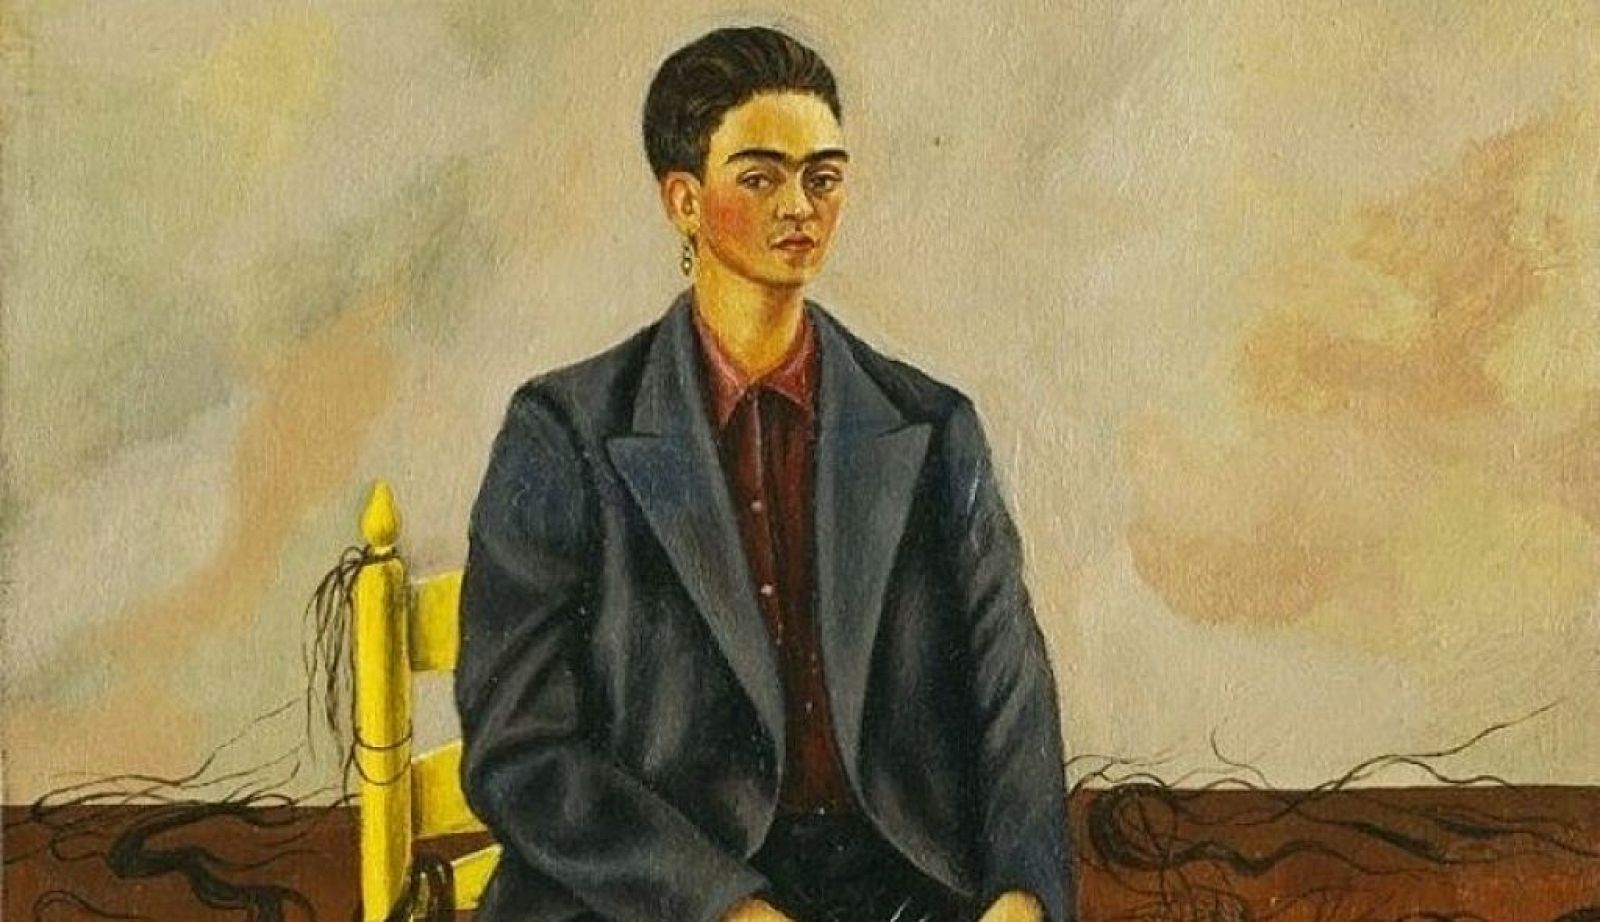 El gallo que no cesa - Punto de fuga: "Autorretrato con pelo cortado", de Frida Kahlo - Escuchar ahora